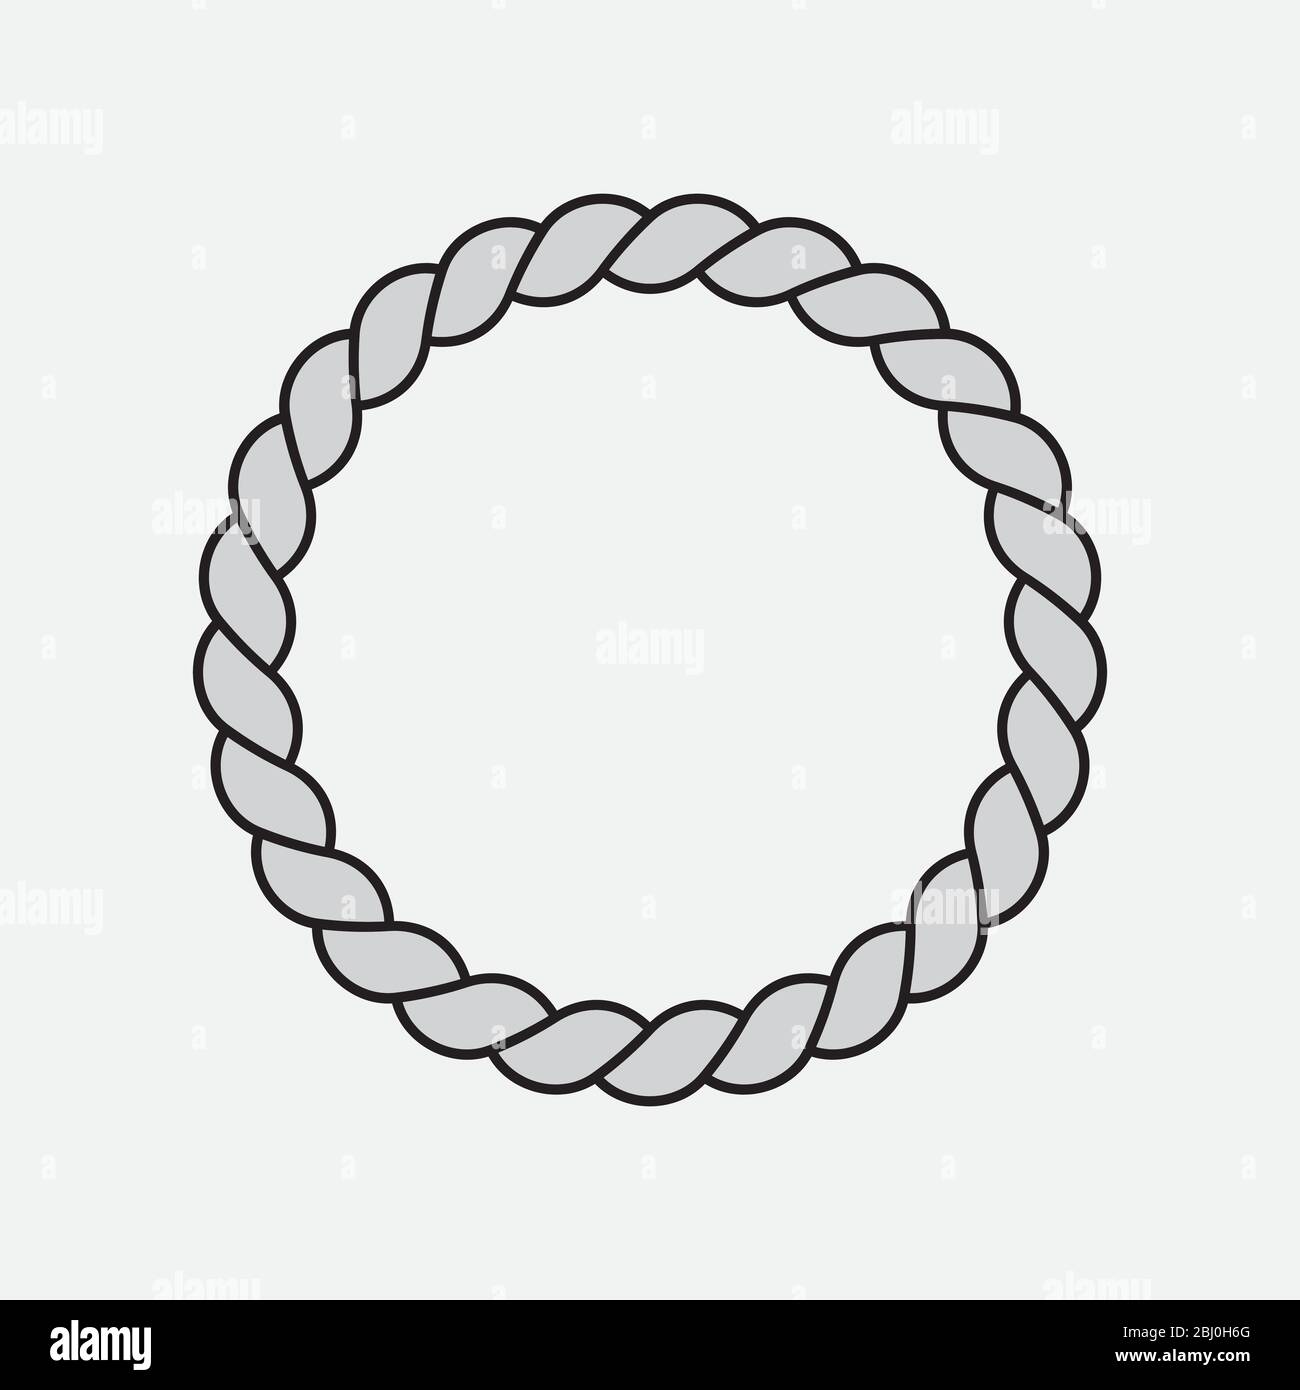 Vektor-Symbol Illustration Design von Kreis Seil Symbol auf weißem  Hintergrund, Kreis Seil Form Zeichen mit abstrakten Linienmuster  Stock-Vektorgrafik - Alamy